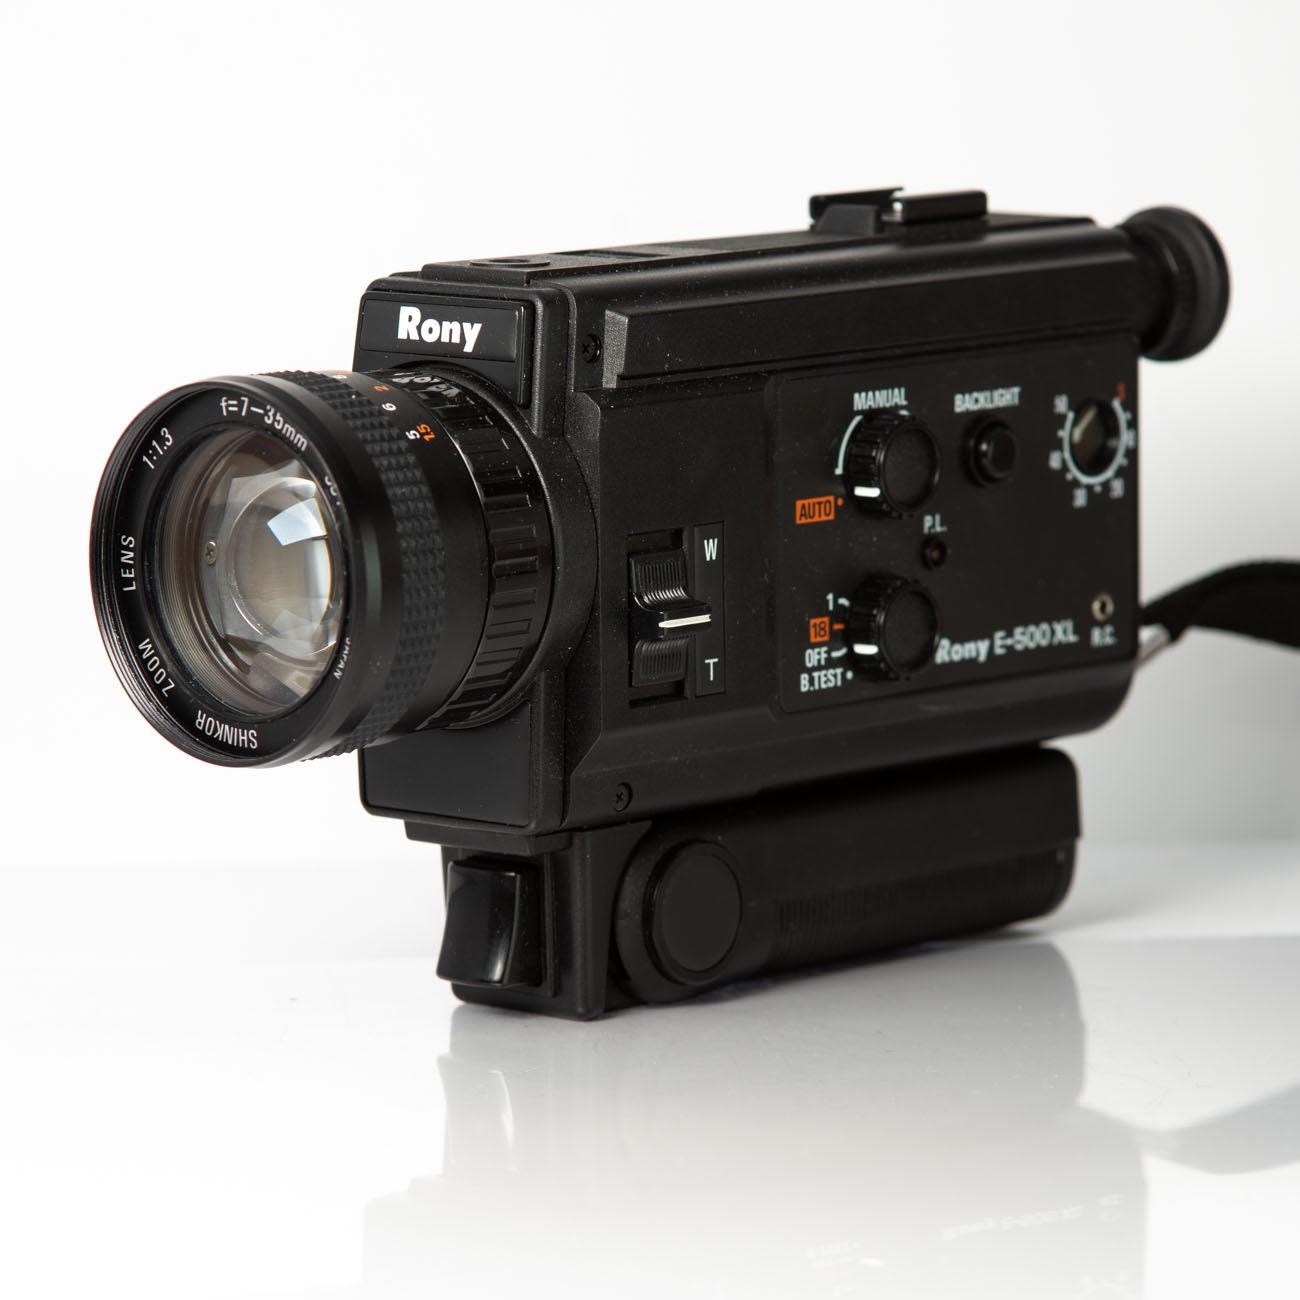 Rony E-500 XL camera super 8